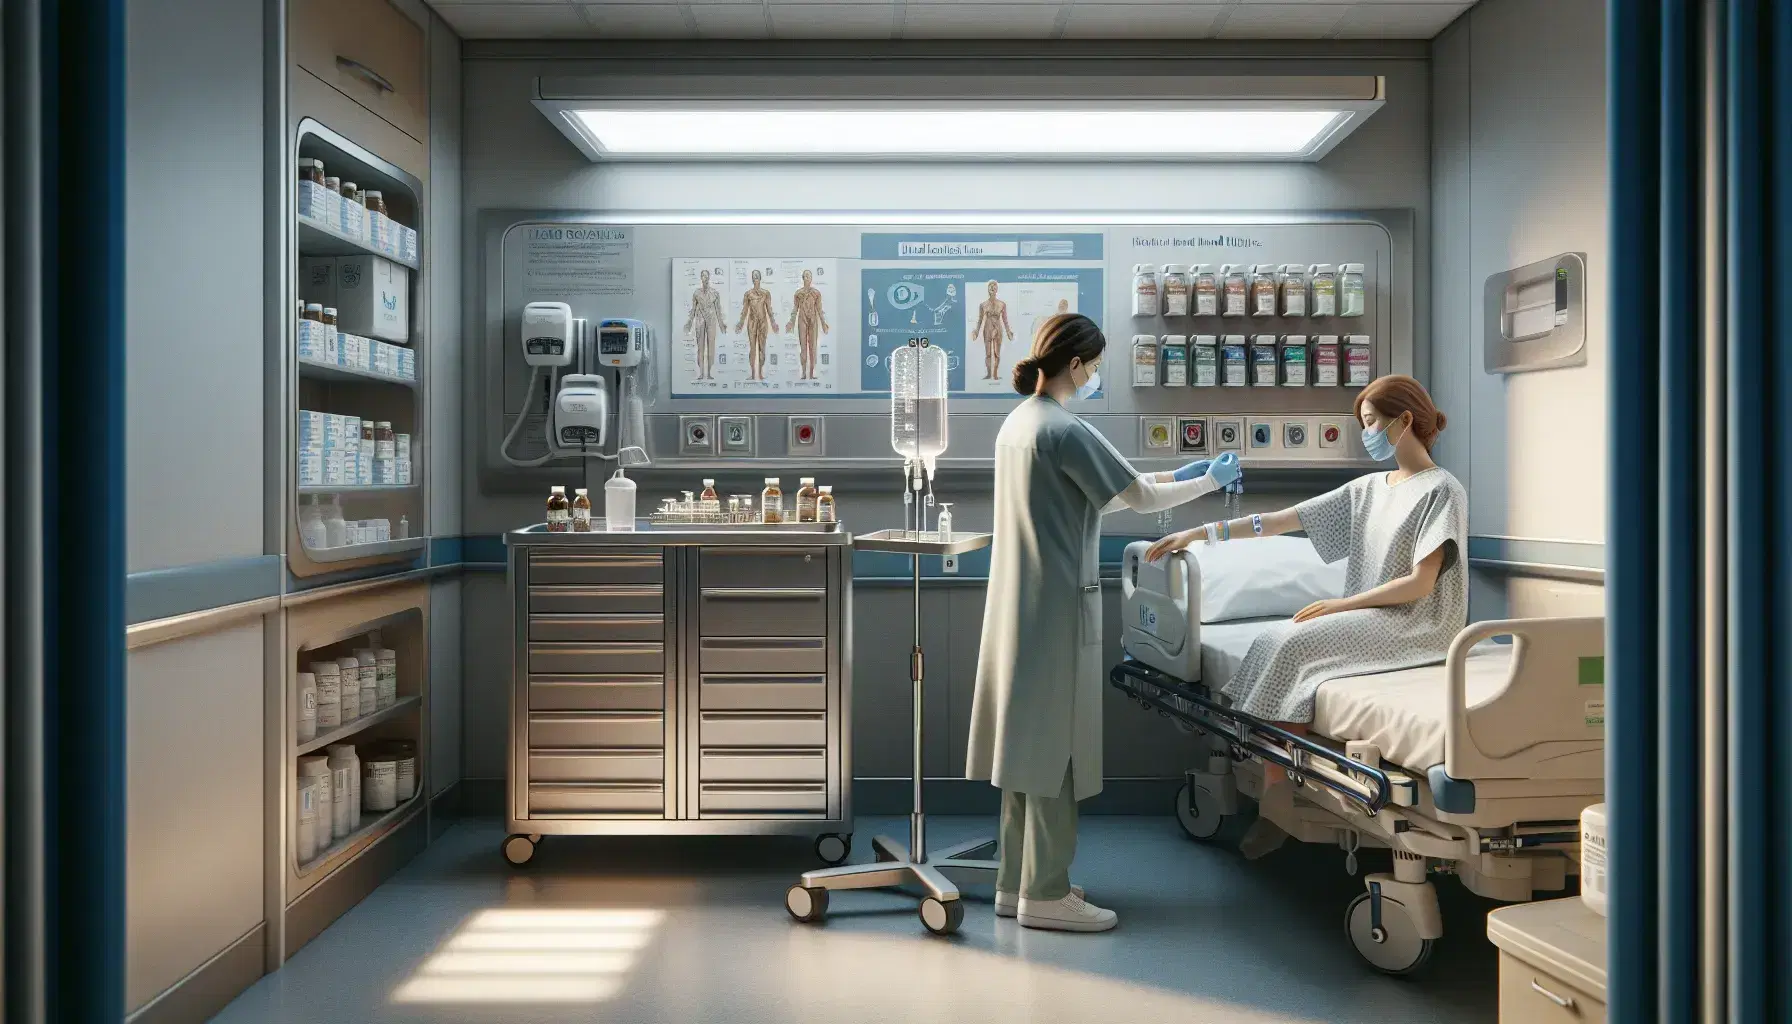 Enfermera en bata azul colocando pulsera de identificación a paciente sentado en cama de hospital, con carro de medicinas y dispensador de gel en fondo.